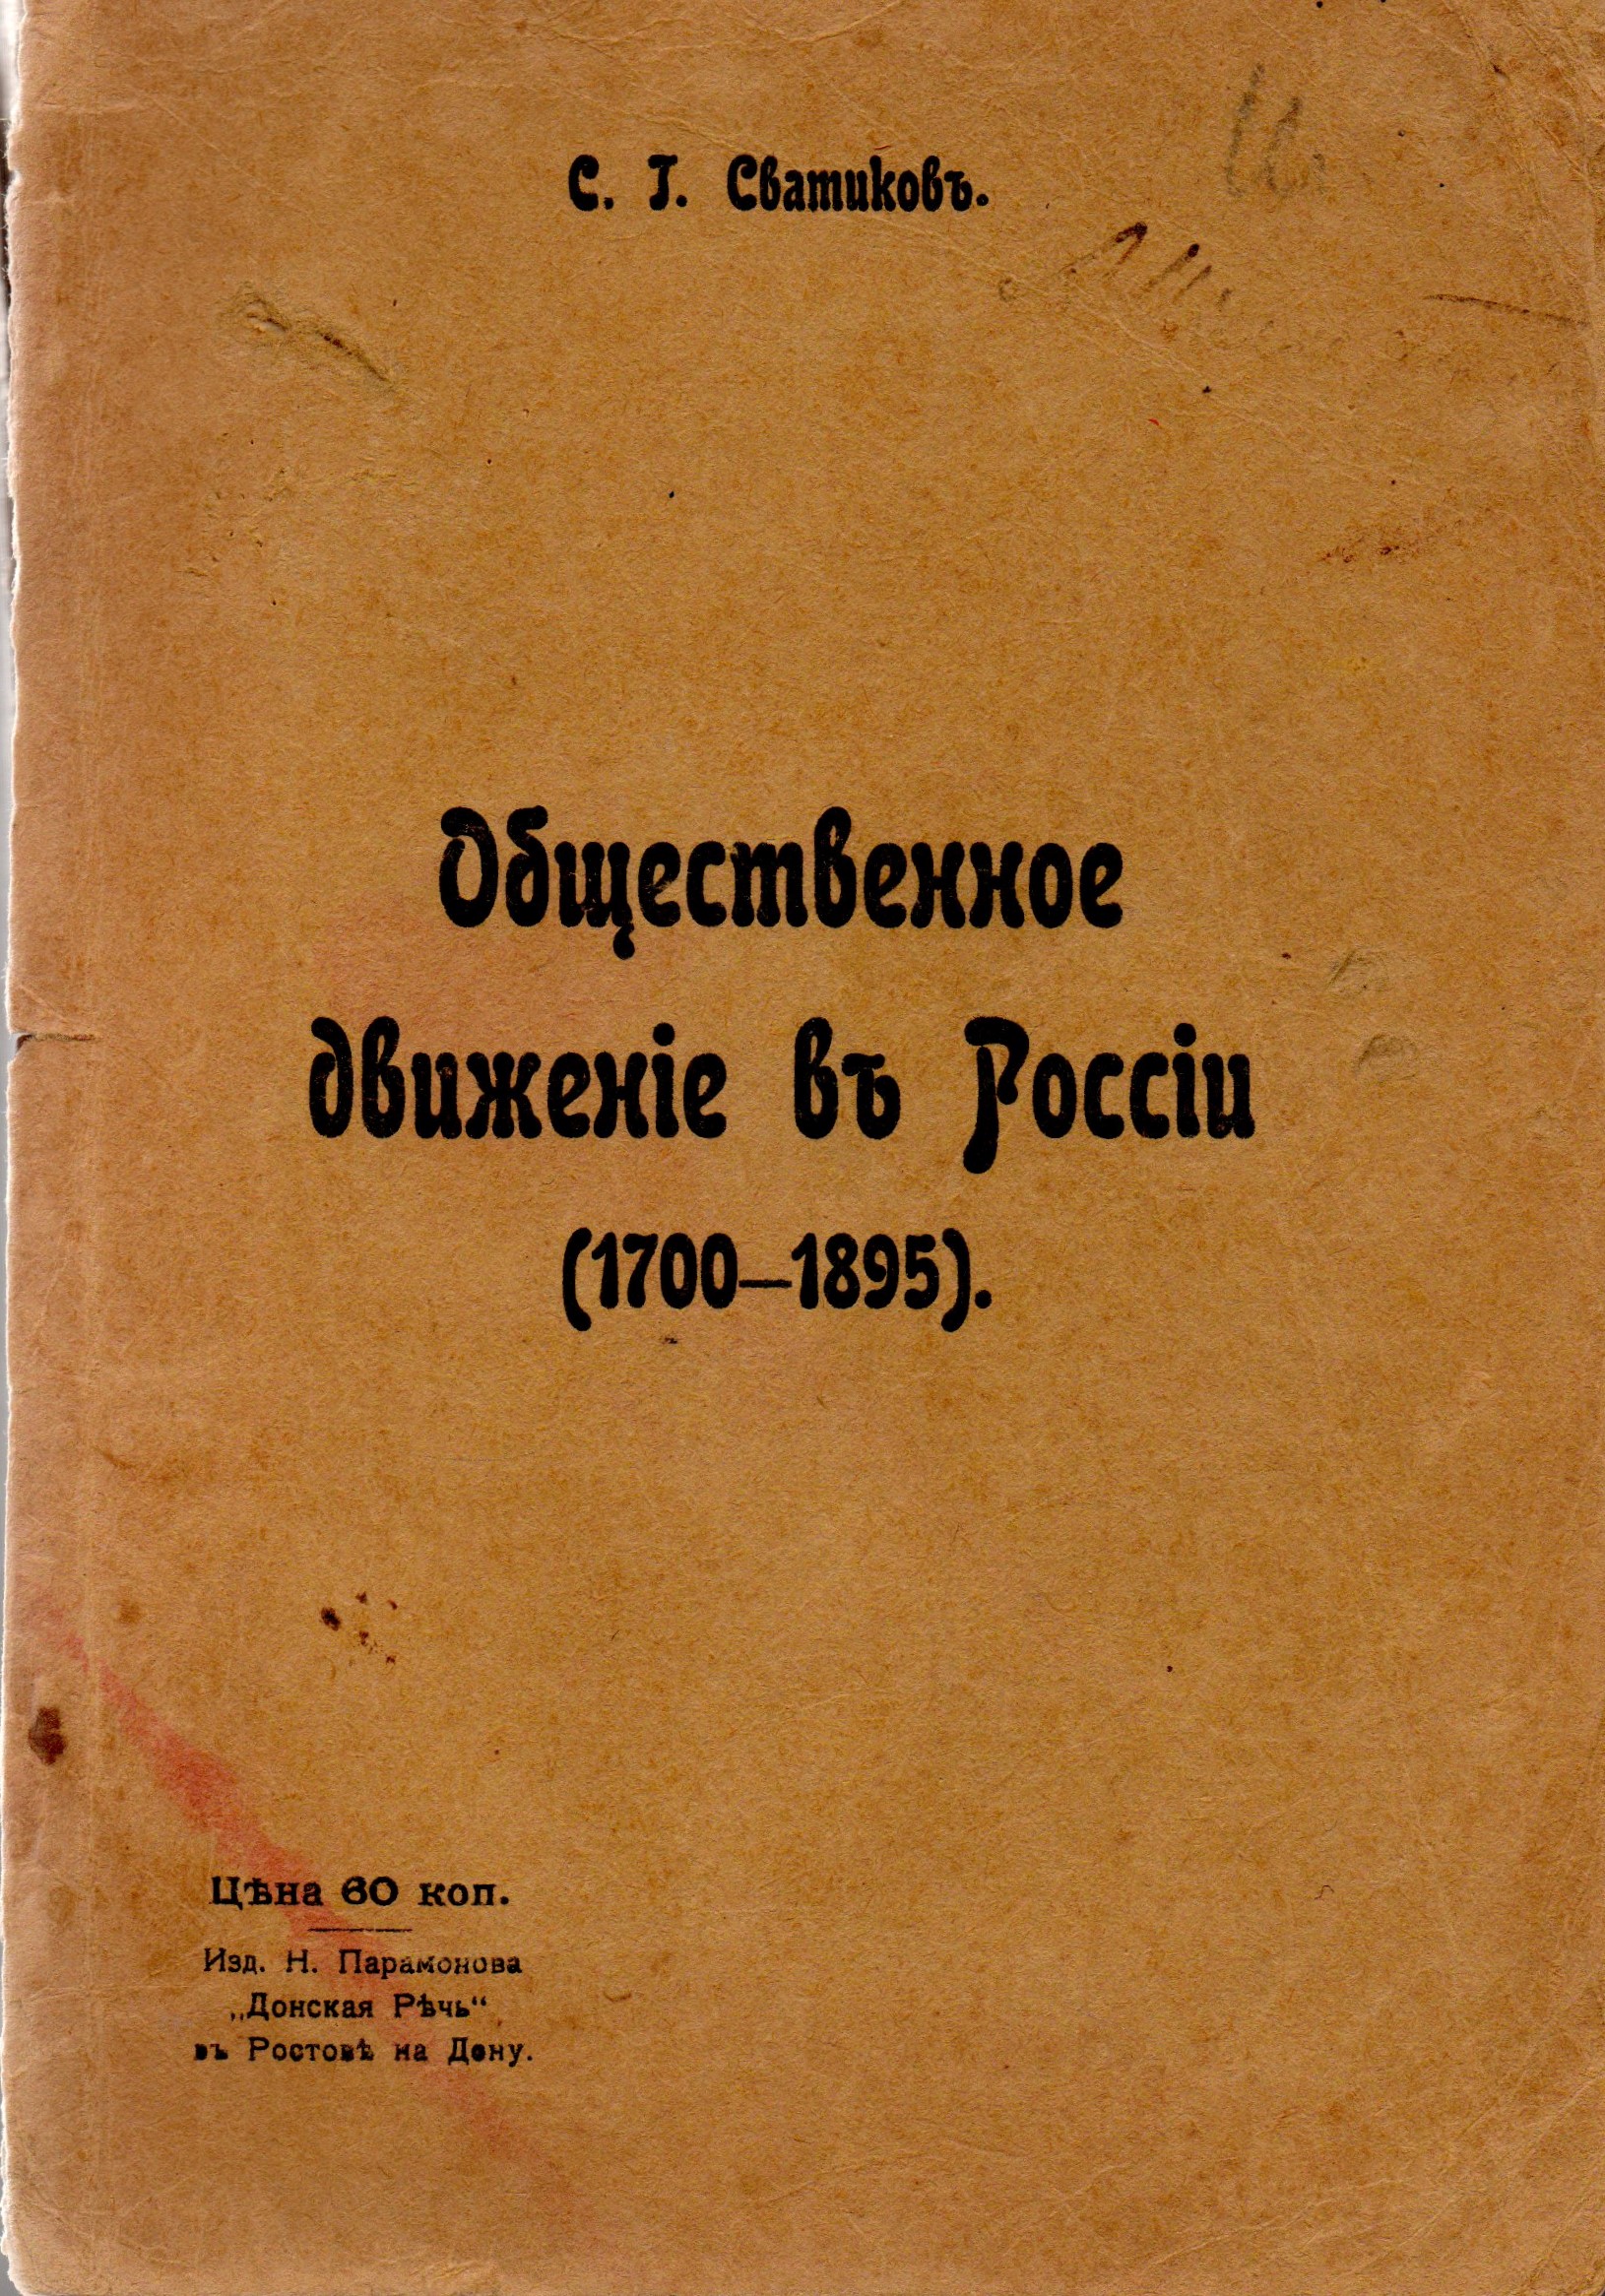 Книга "Сватиковъ С. Г. "Общественное движеніе въ Россіи (1700-1895)"